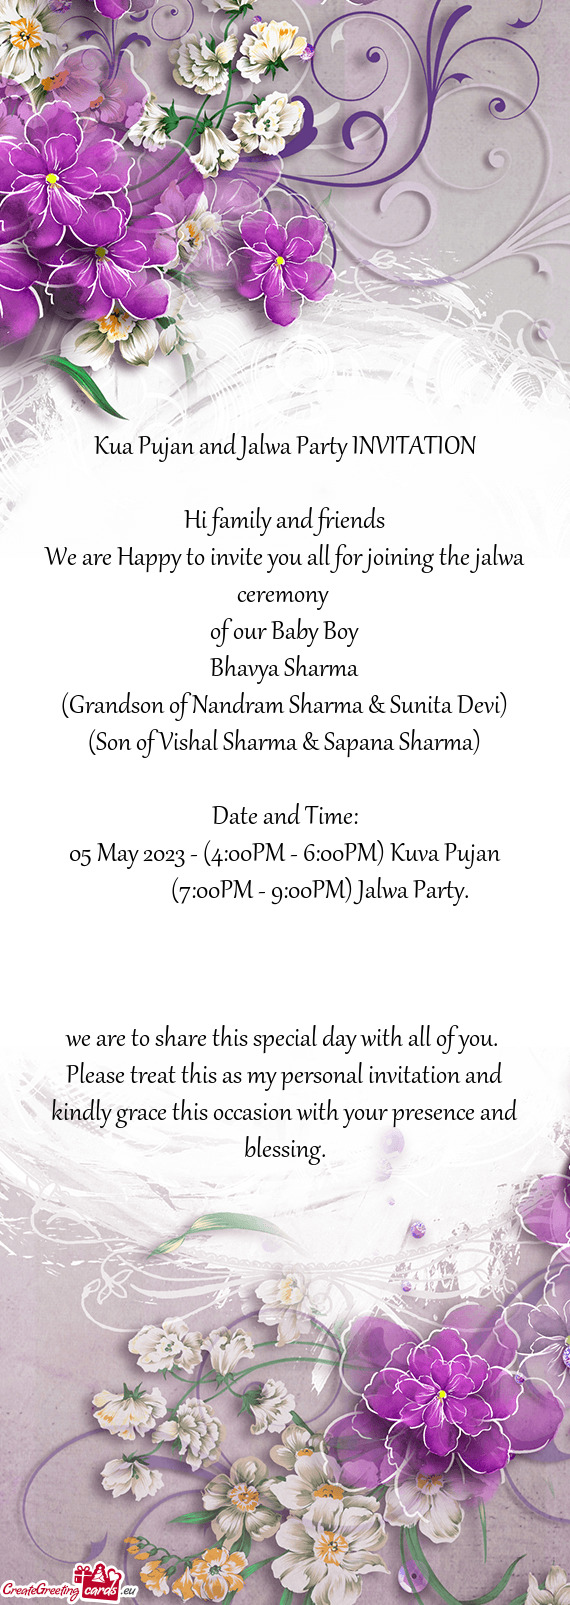 Kua Pujan and Jalwa Party INVITATION